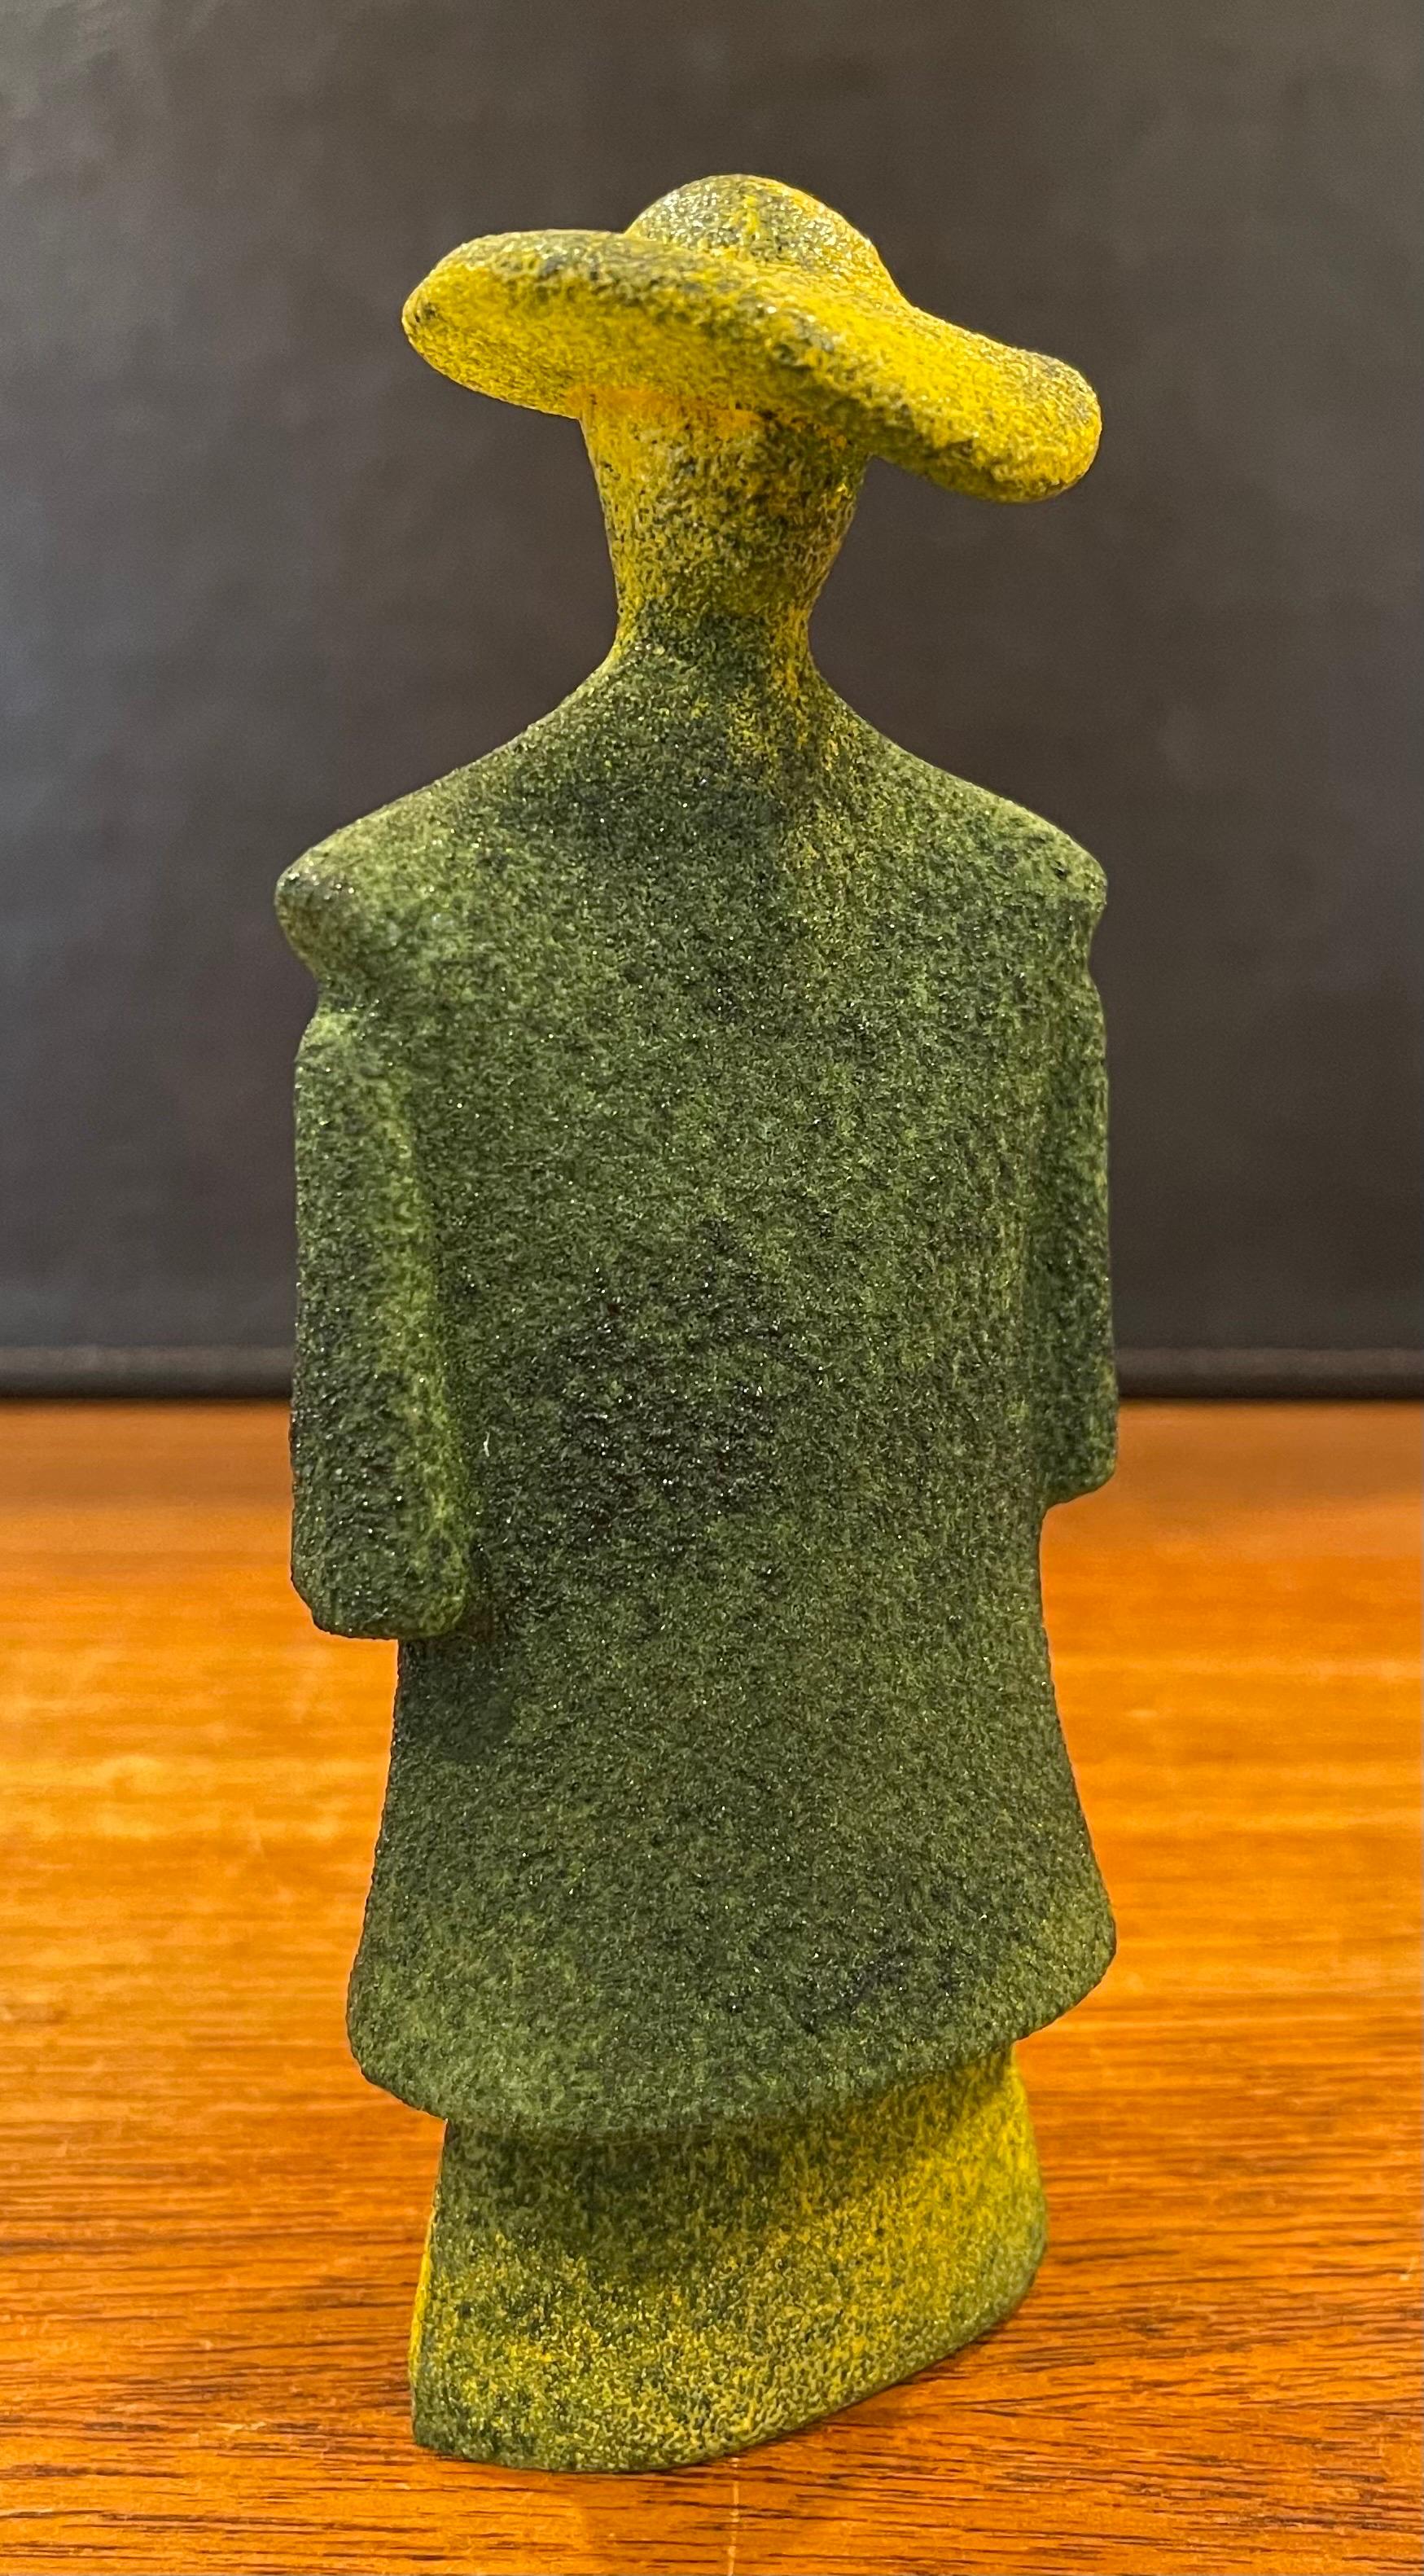 Poncho Green Art Glass Catwalk Sculpture by Kjell Engman for Kosta Boda Sweden For Sale 5